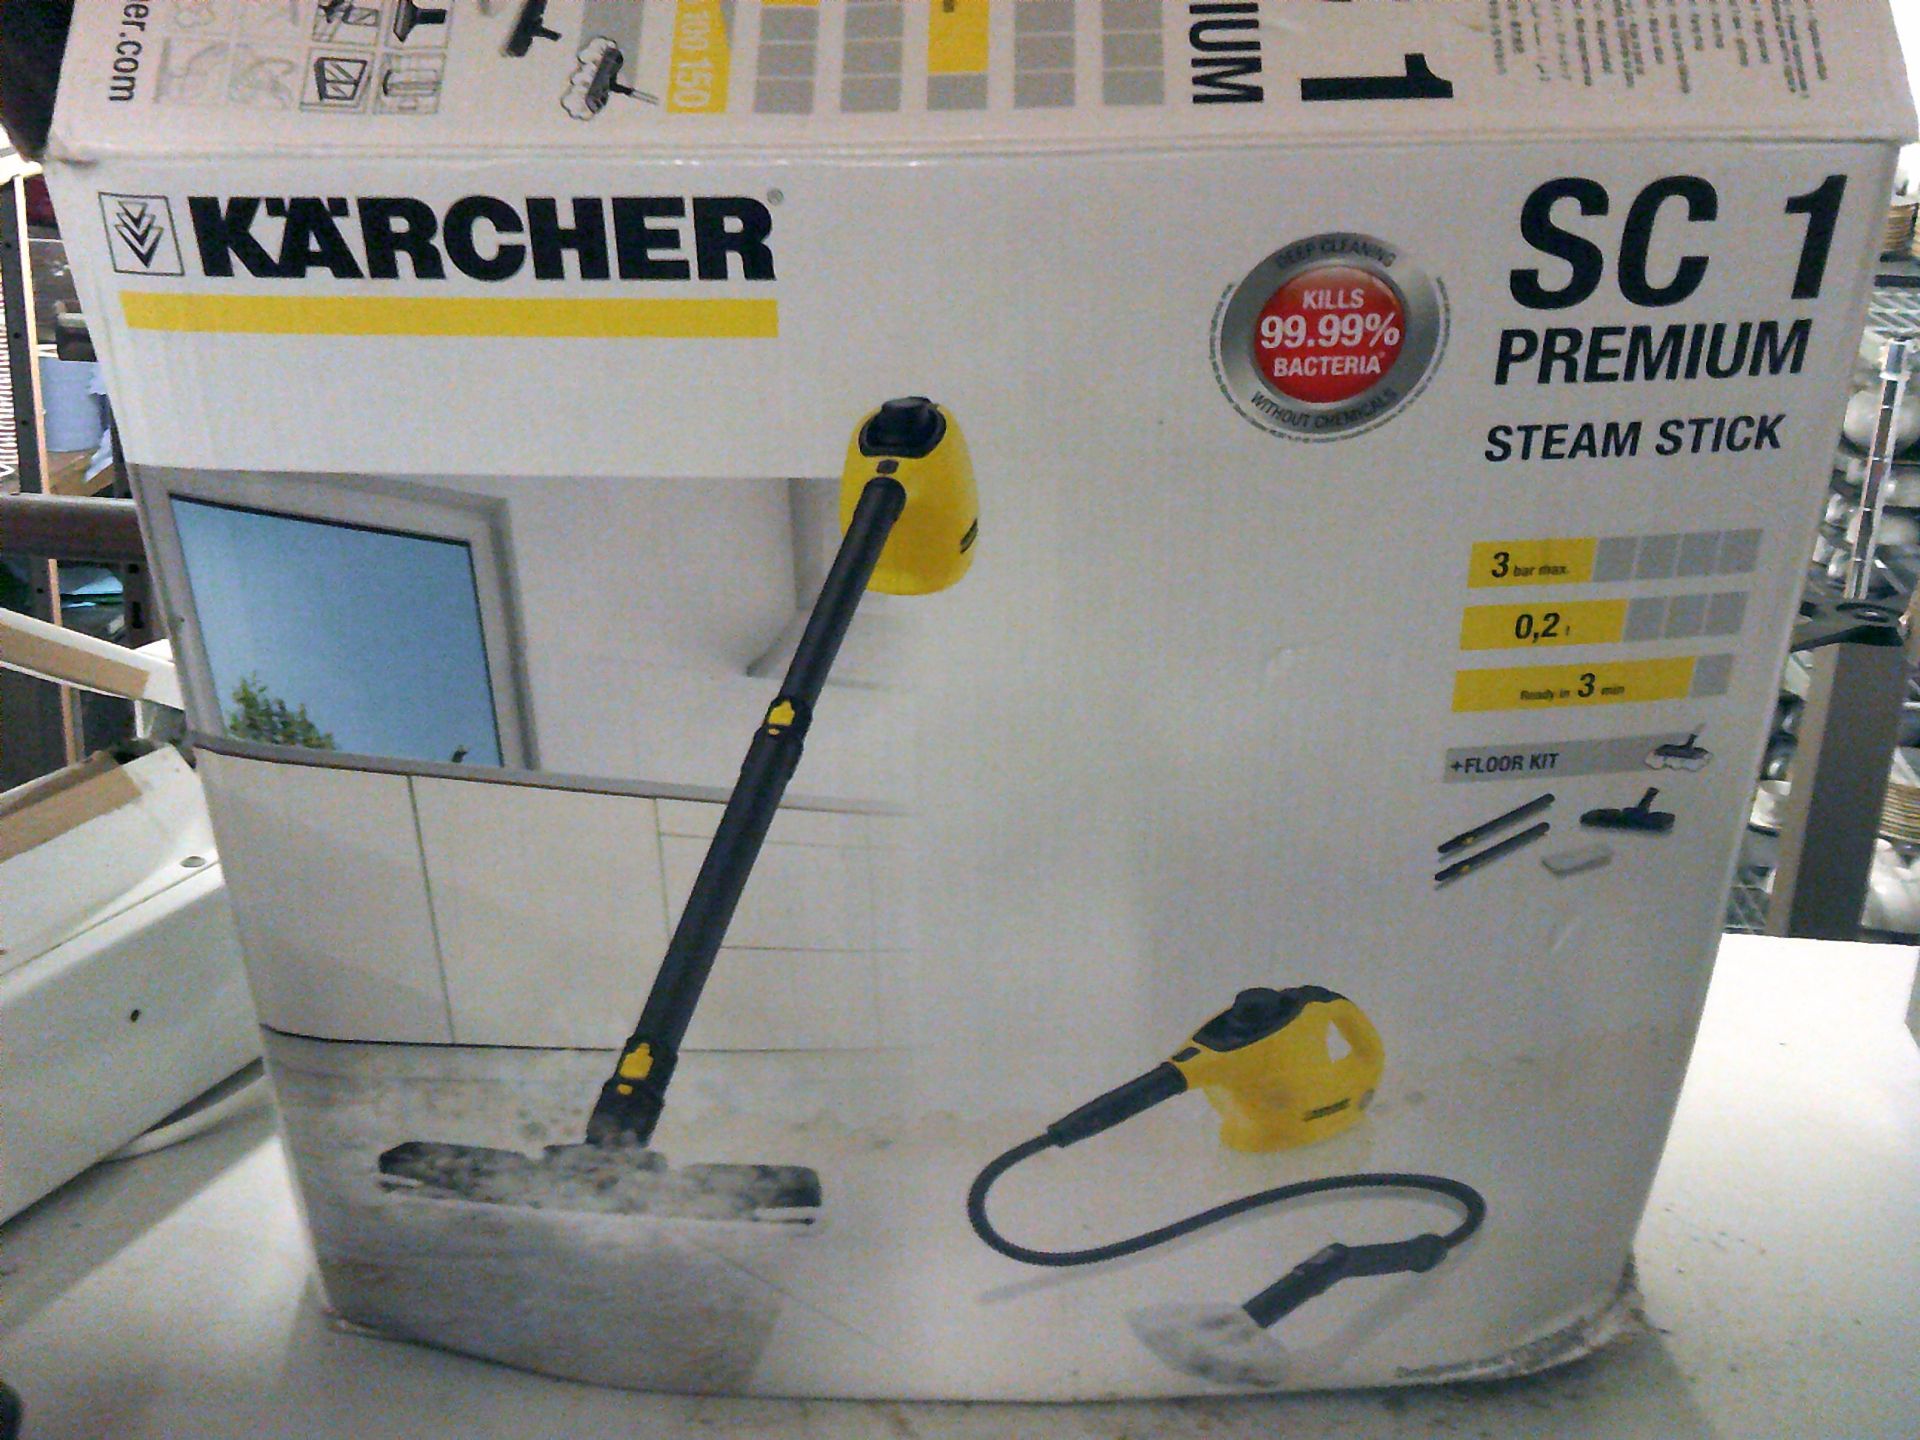 * Karcher SC1 premium steam stick cleaner